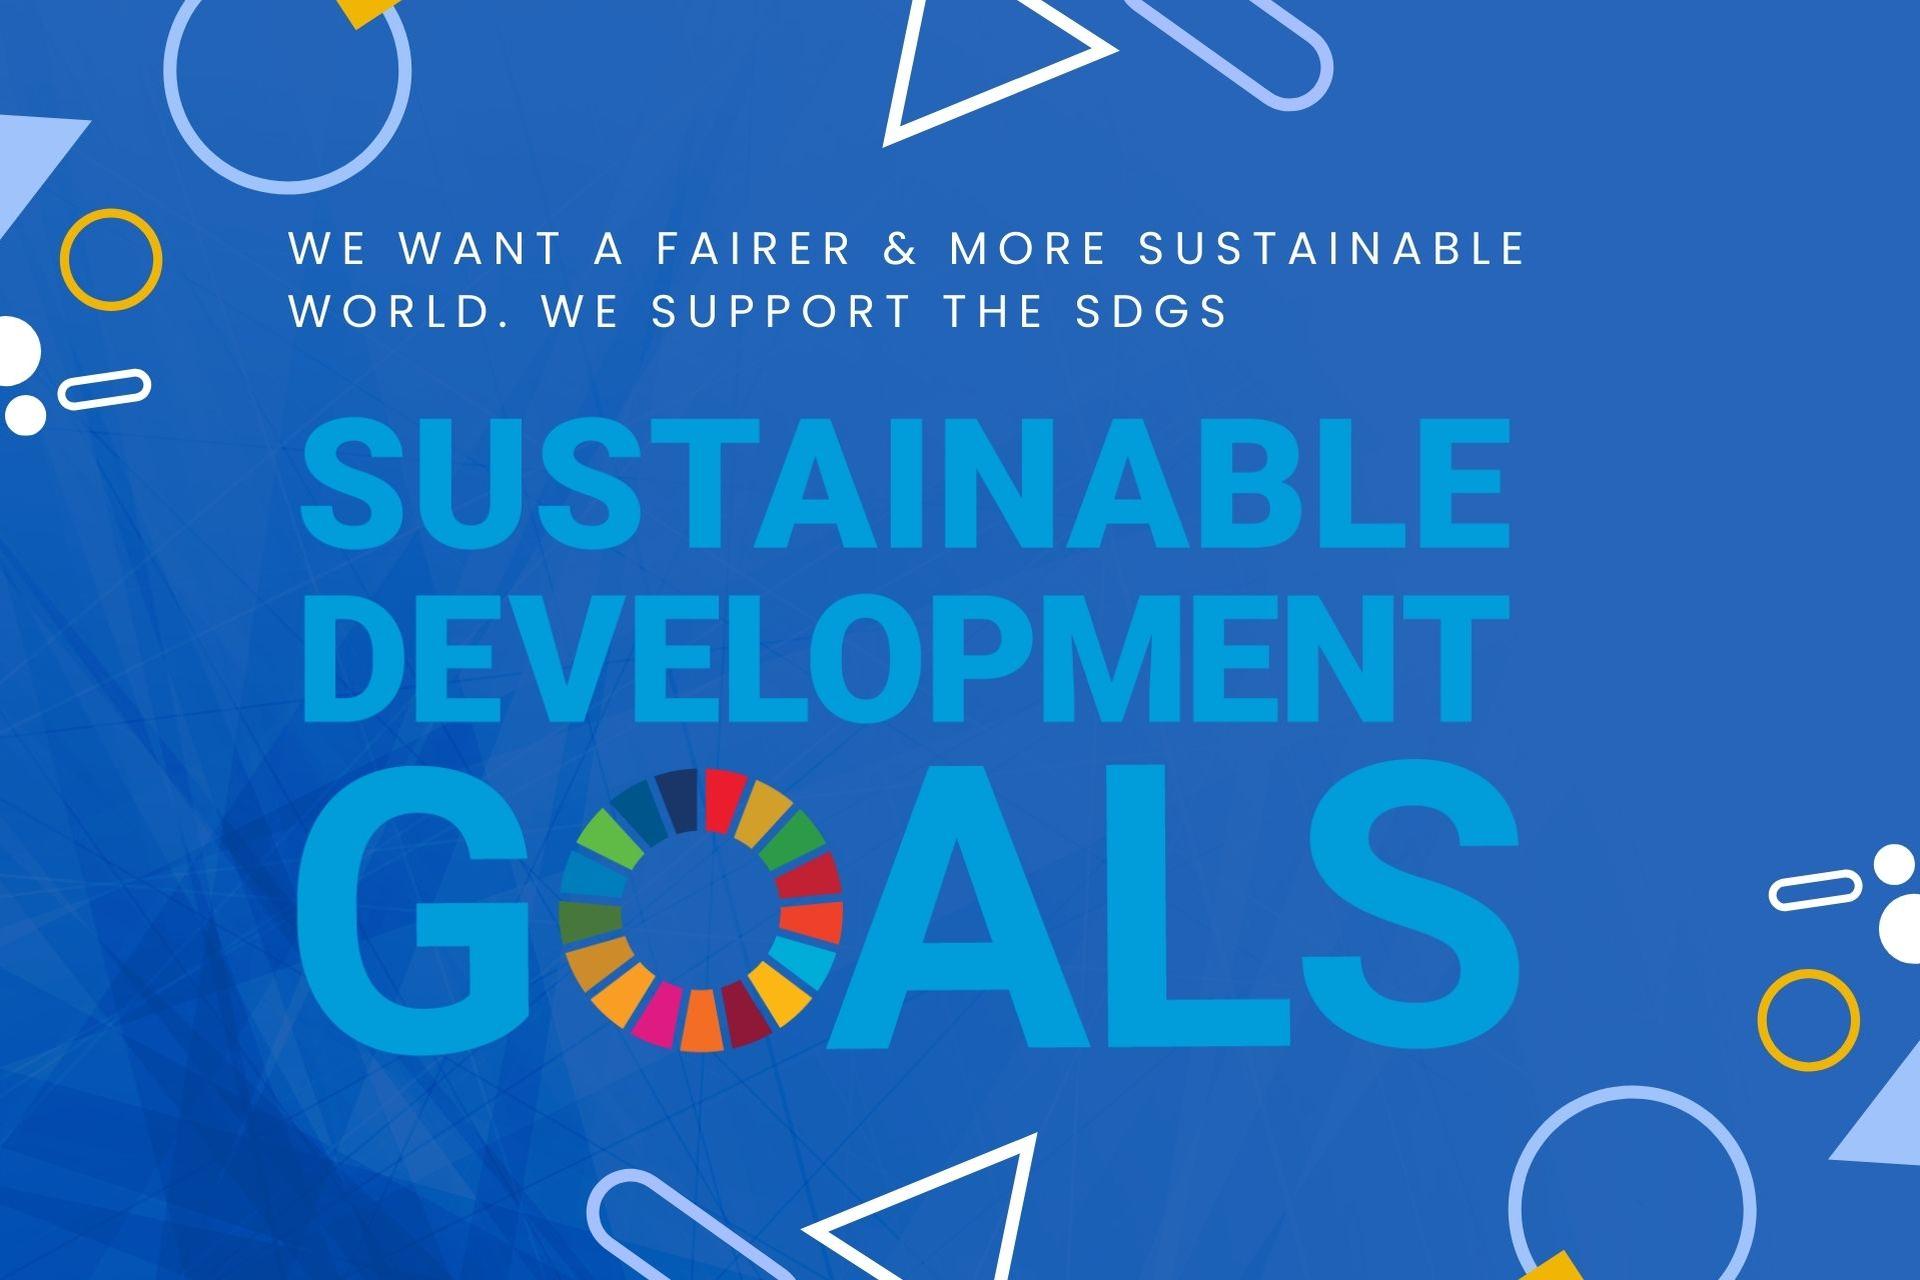 Stikado’s SDG commitment